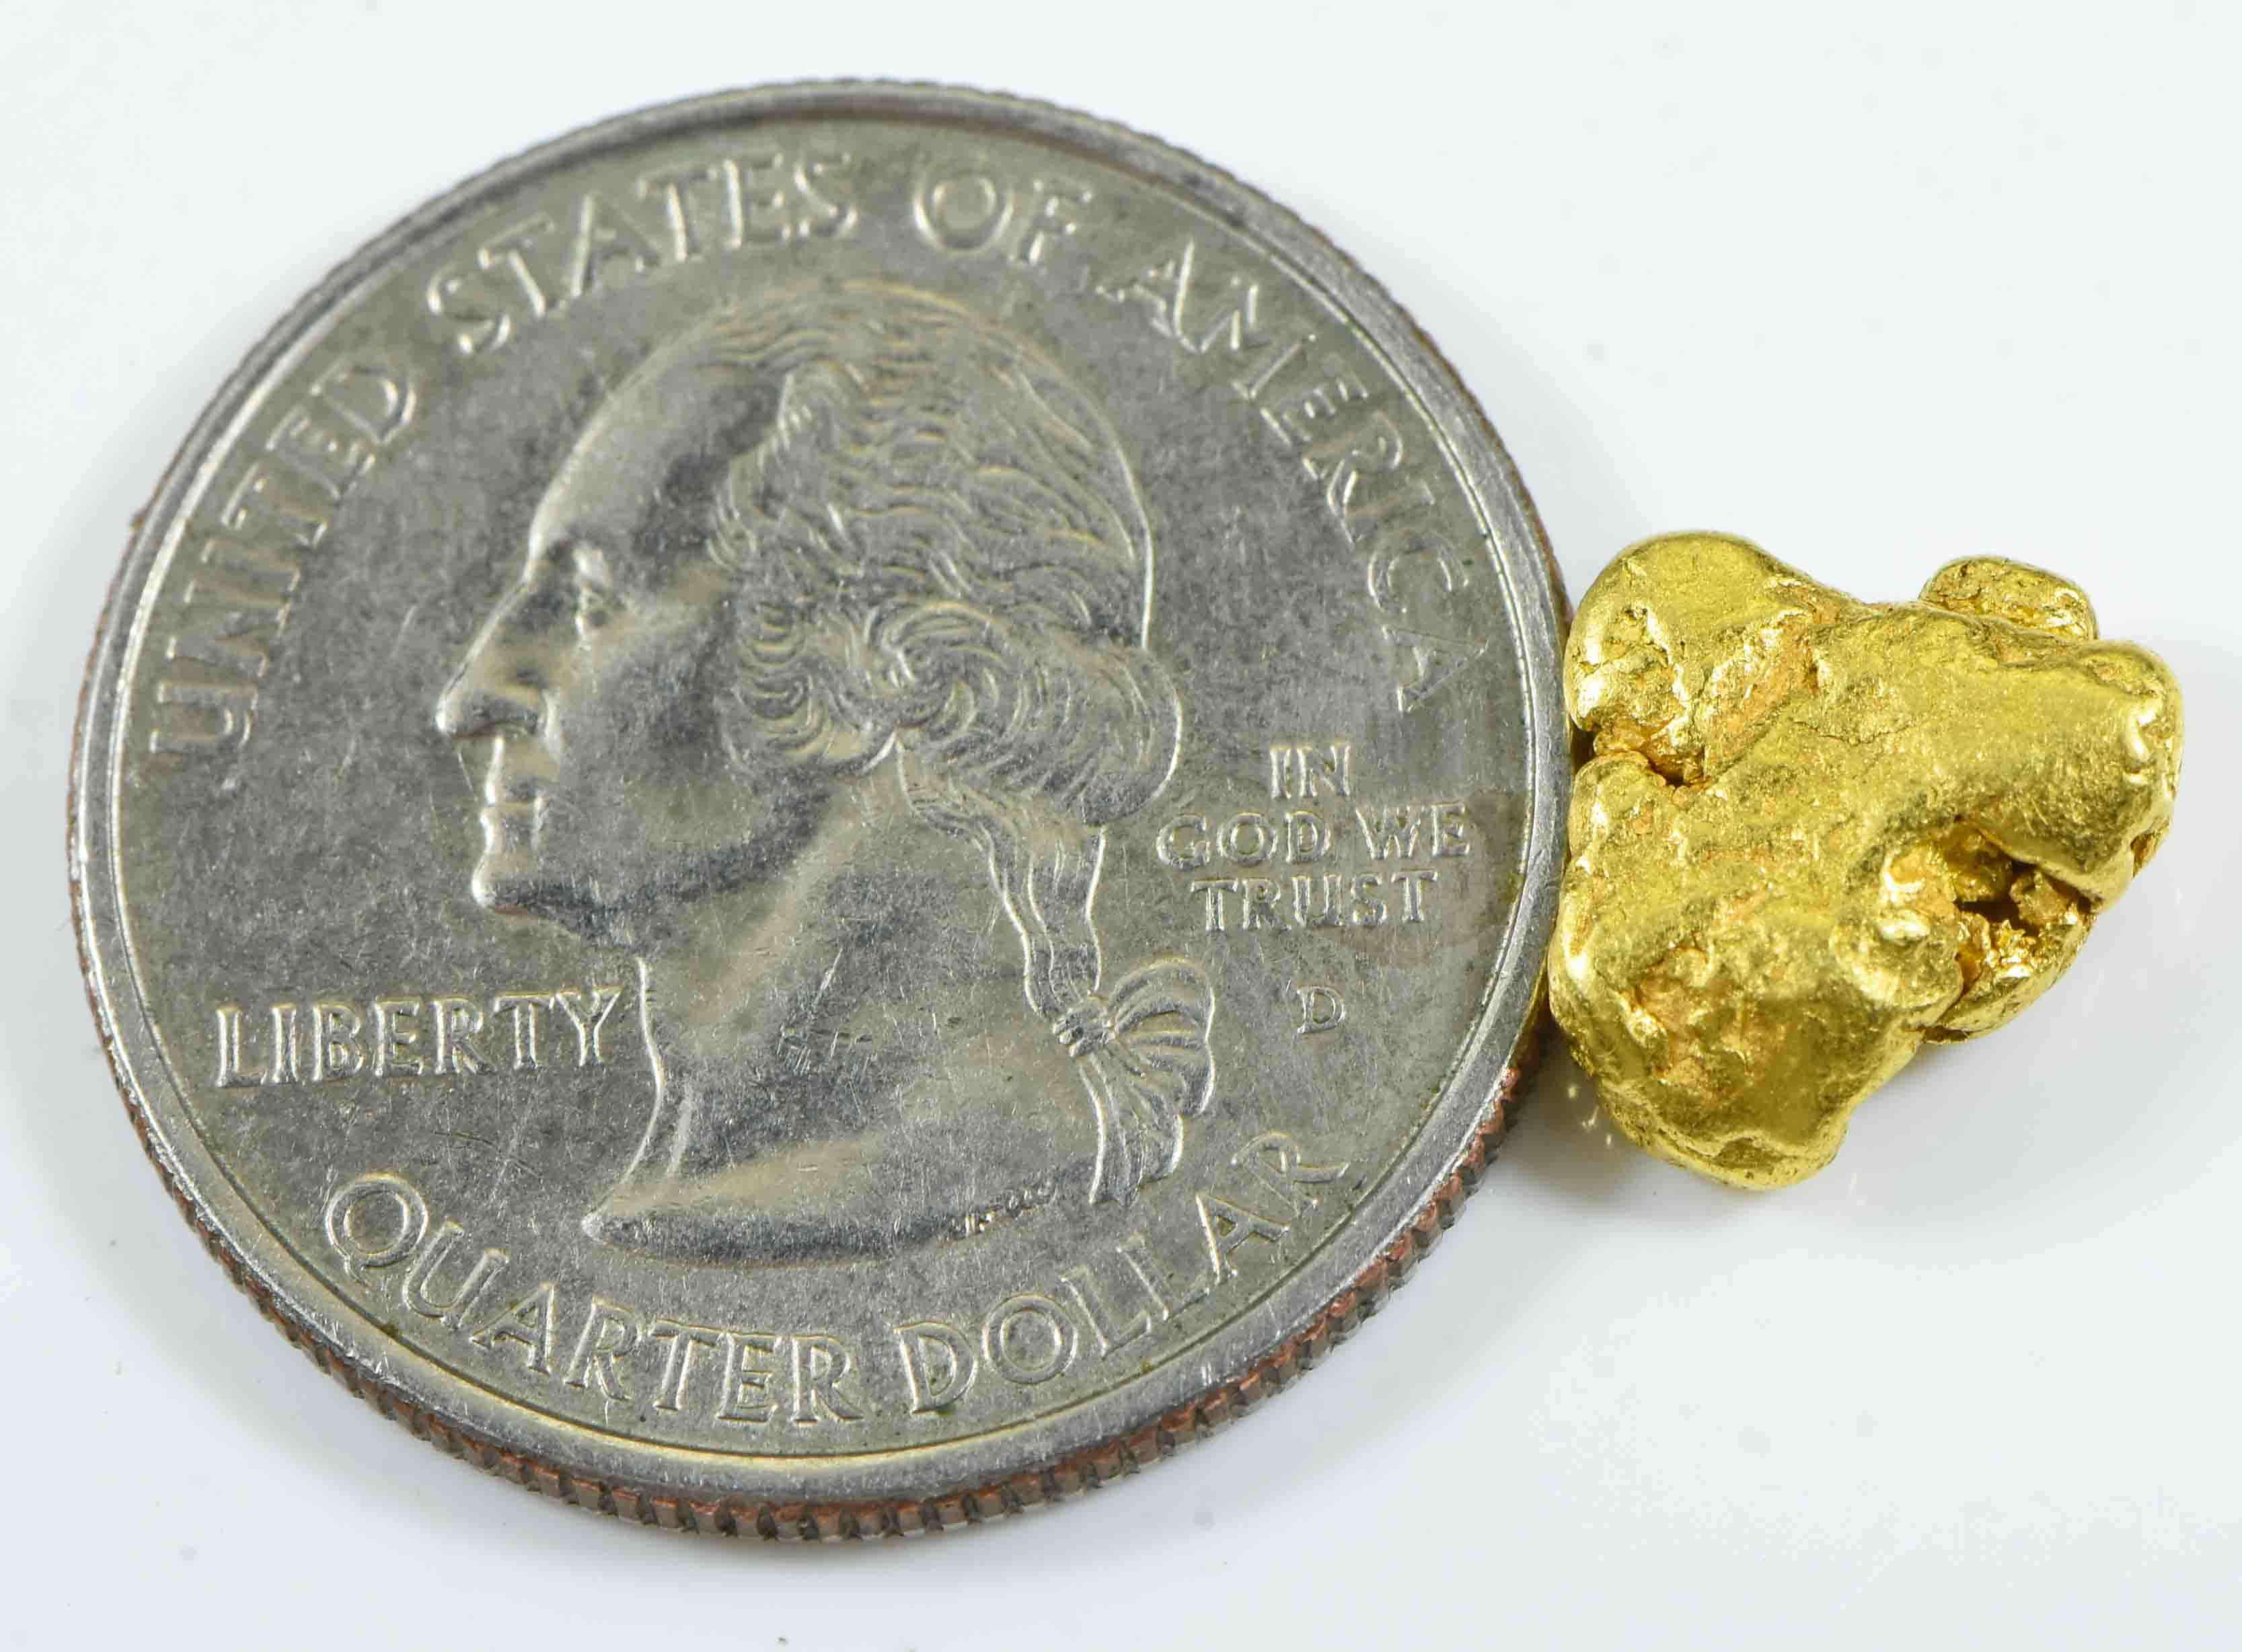 #323 Alaskan BC Natural Gold Nugget 2.71 Grams Genuine